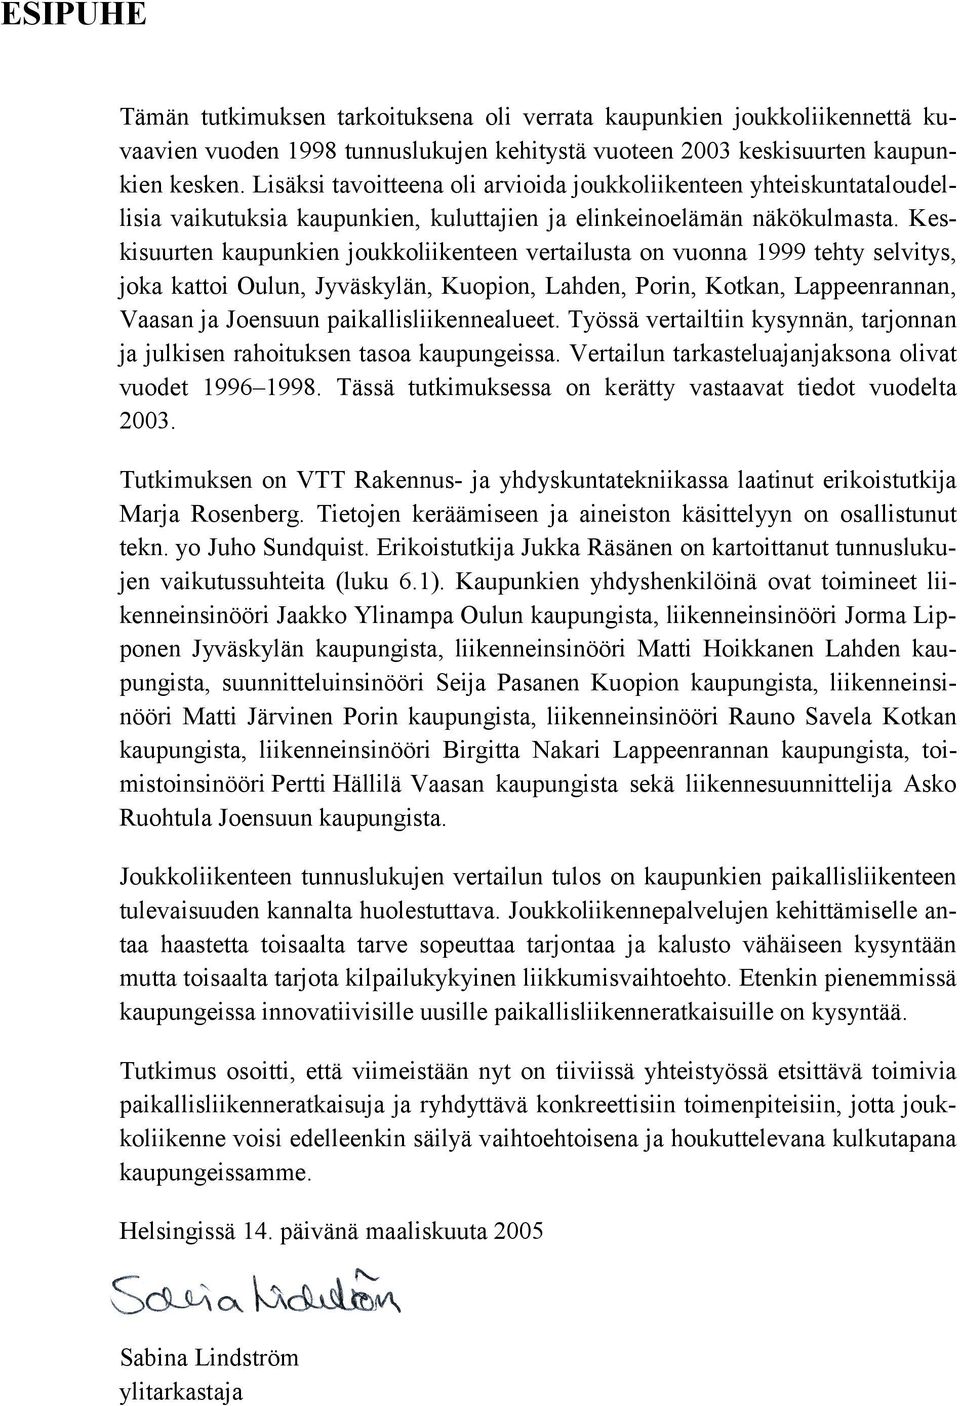 Keskisuurten kaupunkien joukkoliikenteen vertailusta on vuonna 1999 tehty selvitys, joka kattoi Oulun, Jyväskylän, Kuopion, Lahden, n, Kotkan, Lappeenrannan, Vaasan ja Joensuun